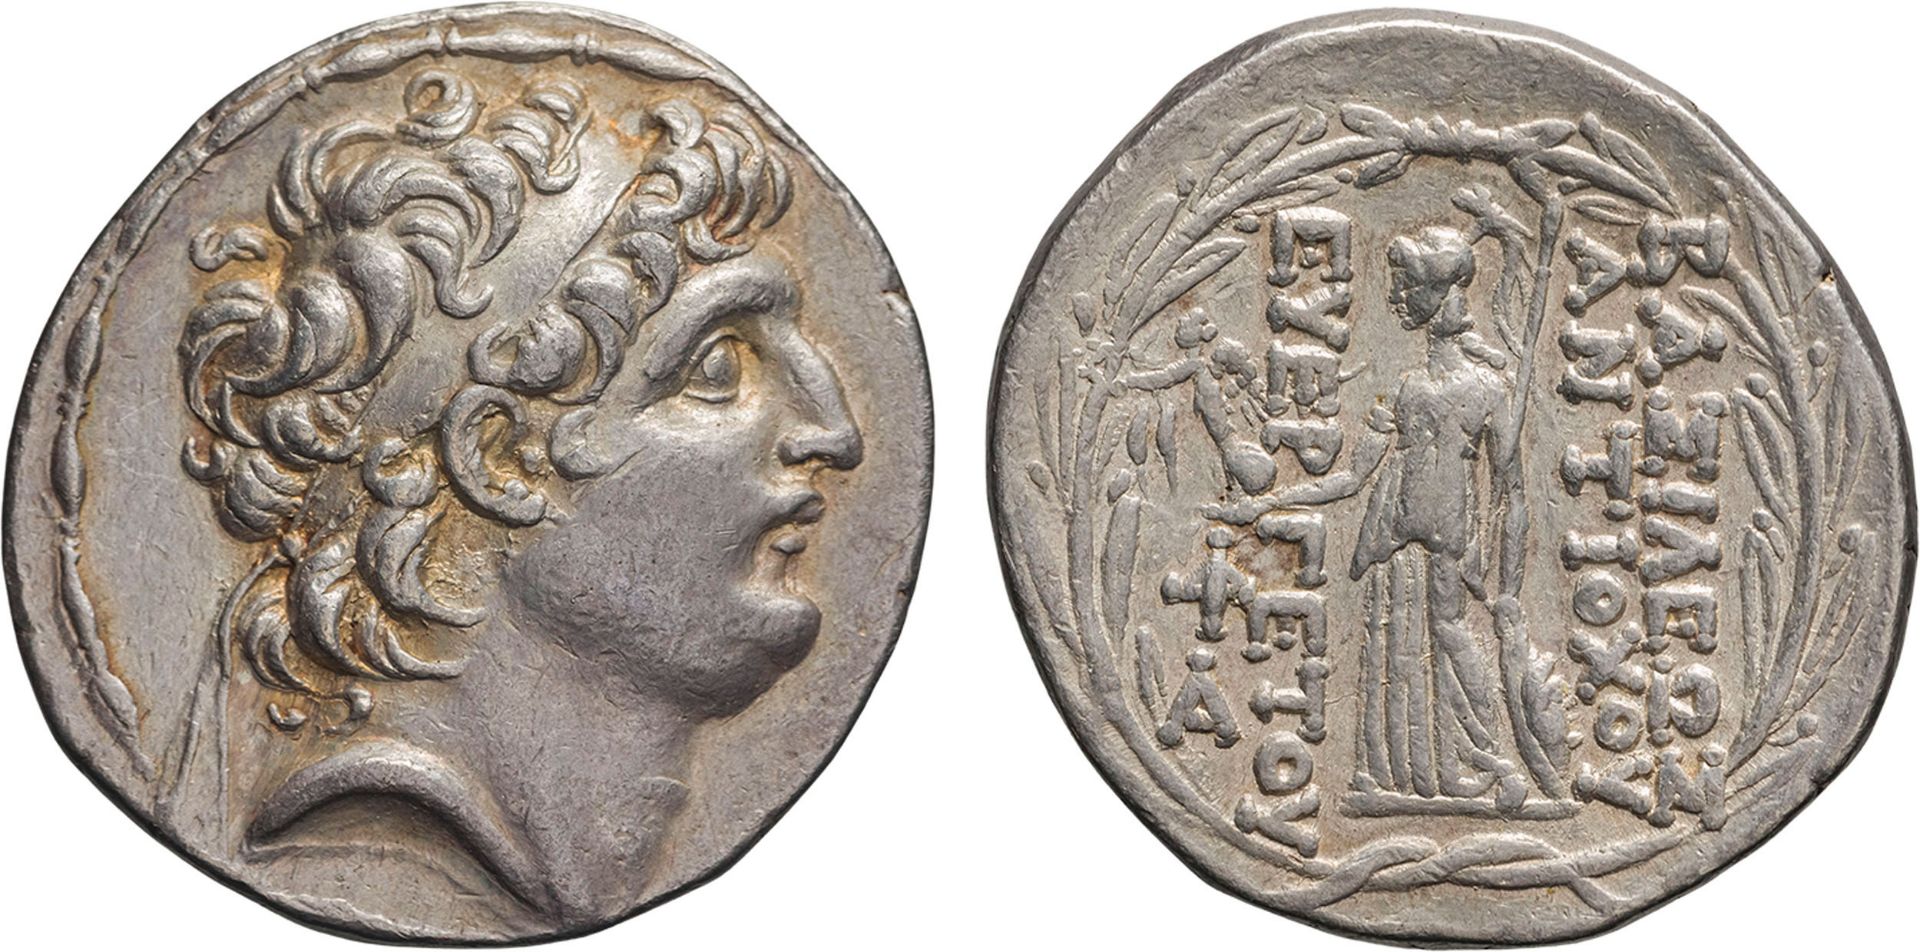 MONETE GRECHE. RE SELEUCIDI. ANTIOCO VII (138-129 A.C.) TETRADRACMA